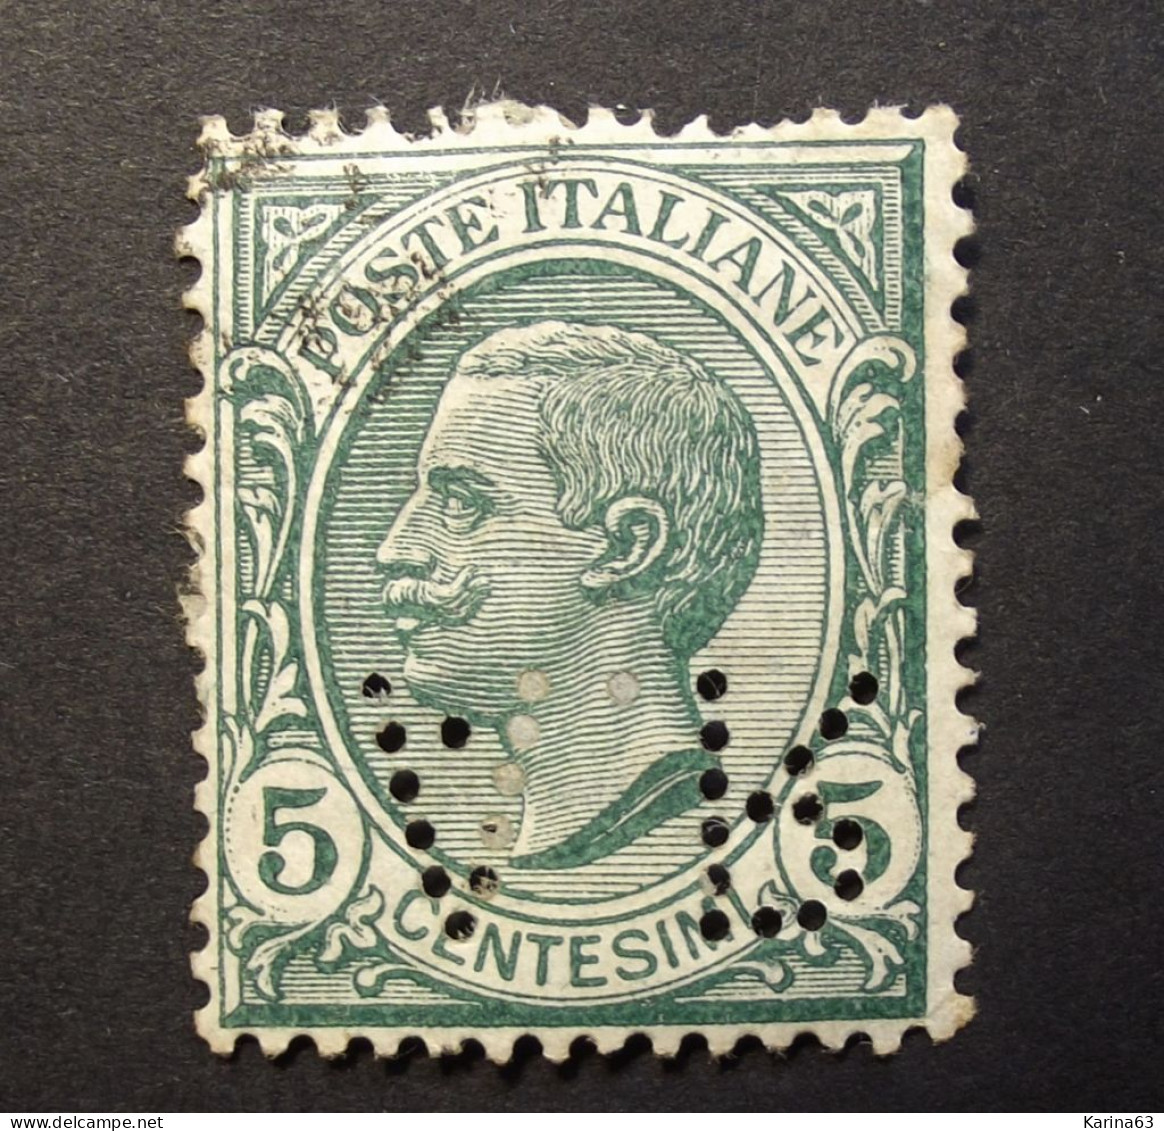 Italia - Italy - 1906 -  Perfin - Lochung -  A R -  A.Rejna - Milano  -  Cancelled - Usati